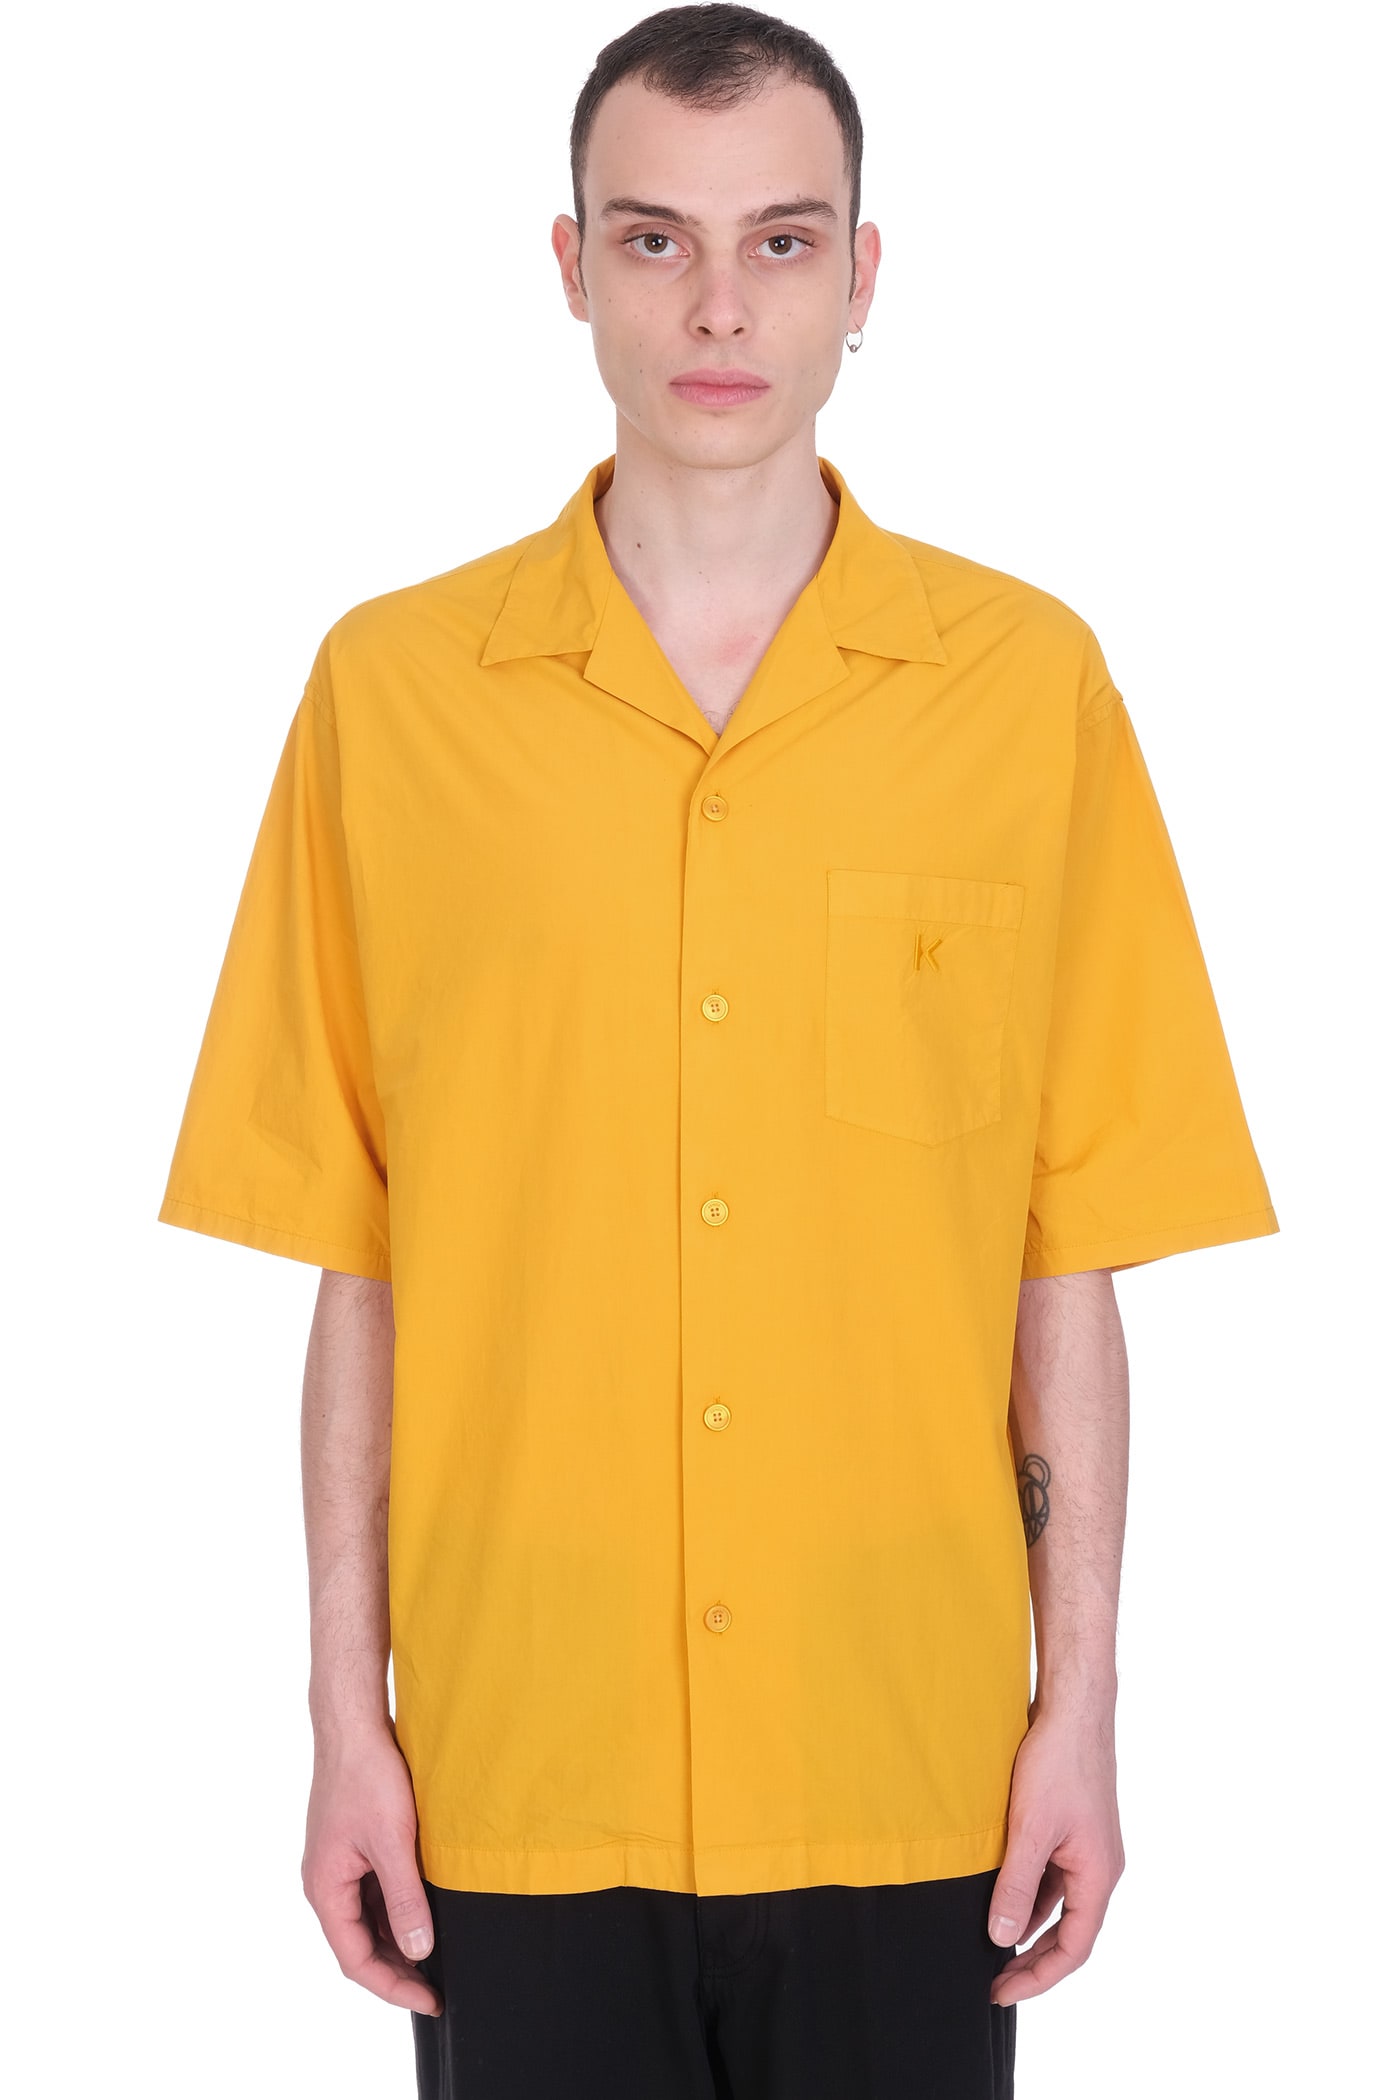 Kenzo Shirt In Yellow Cotton